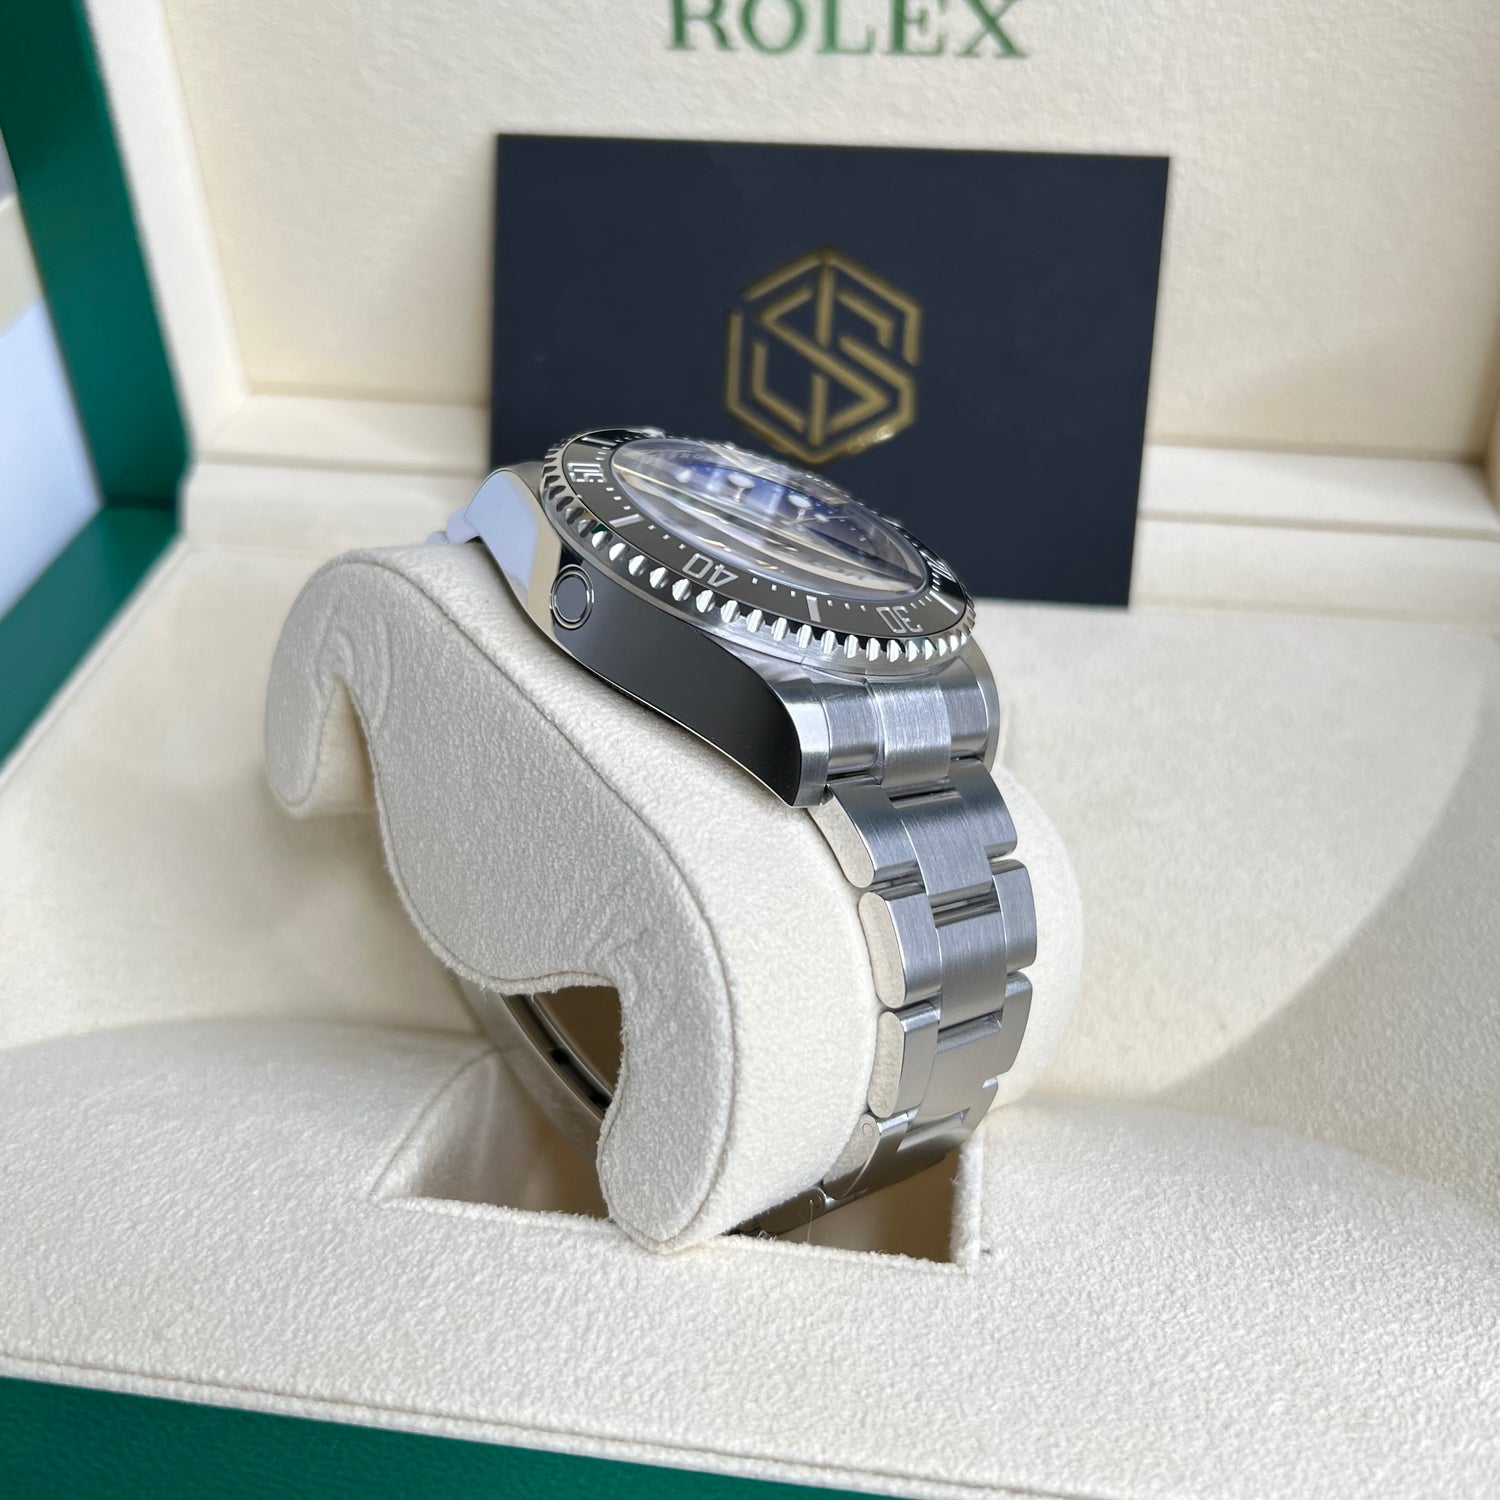 Rolex DeepSea James Cameron 126660 July 2022 Unworn Full Set Watch